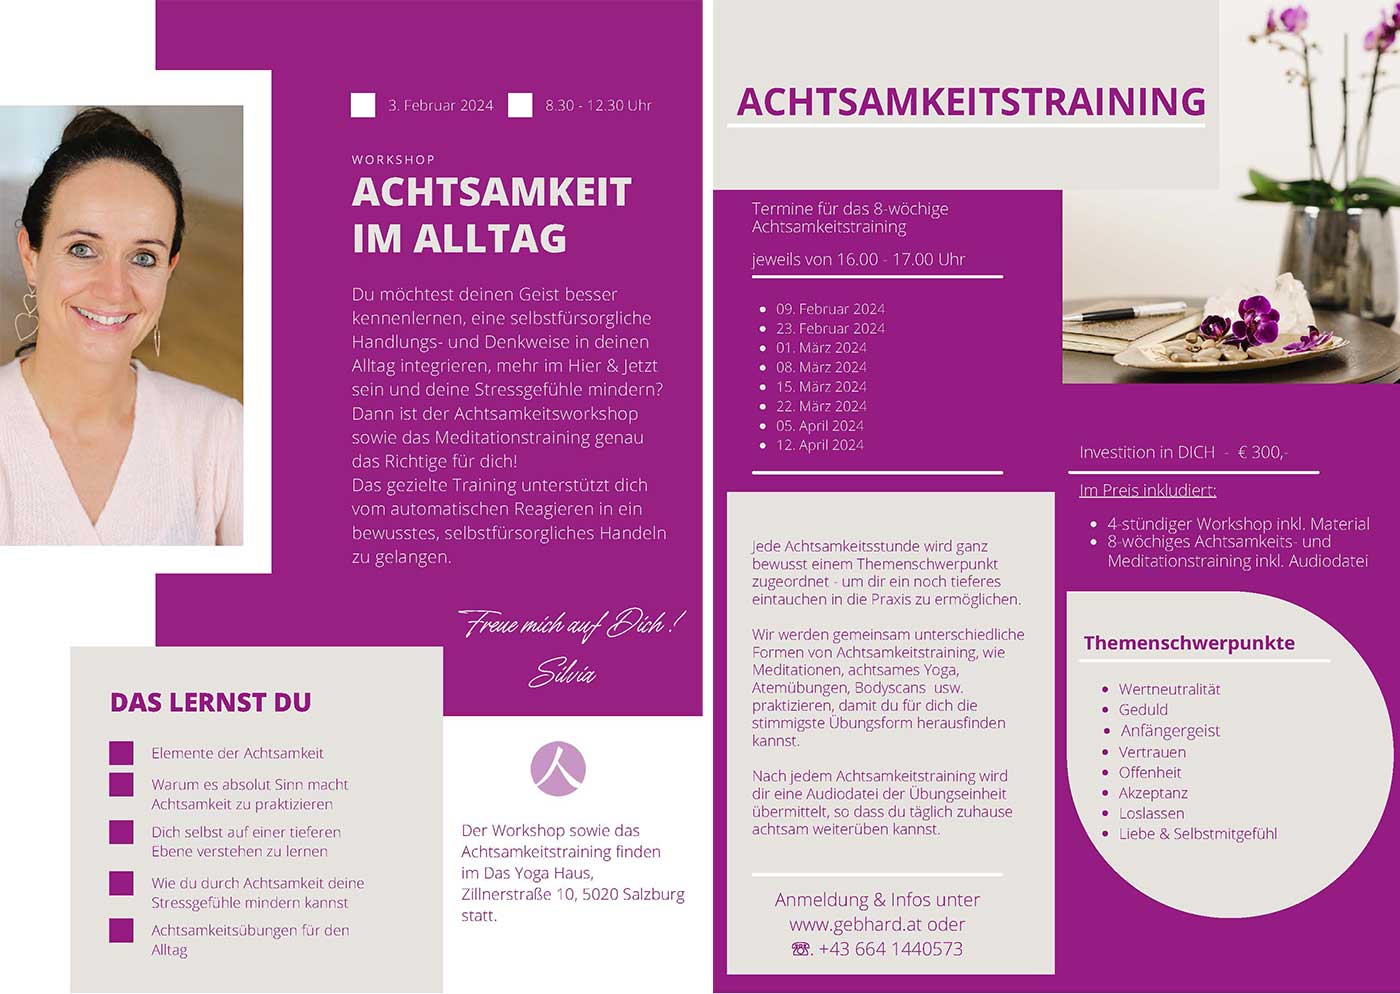 Achtsamkeitsworkshop und Meditationstraining WORKSHOP zum Thema ACHTSAMKEIT IM ALLTAG mit Silvia Gebhard